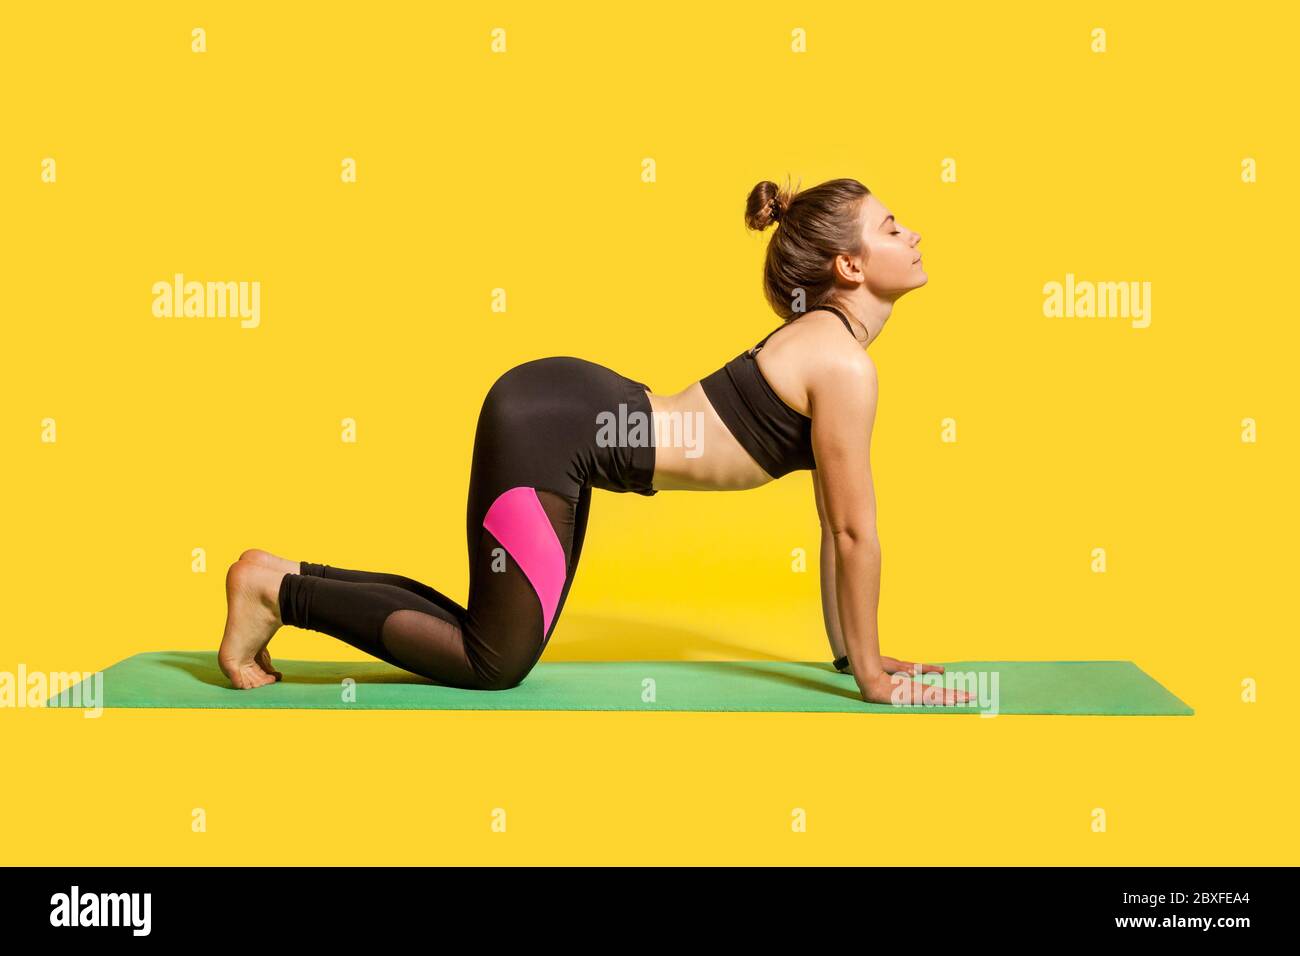 Posa mucca. Atletica donna concentrata in stretto abbigliamento sportivo praticando yoga, meditando con gli occhi chiusi, facendo Biilasana esercizio su mani e ginocchia. Foto Stock